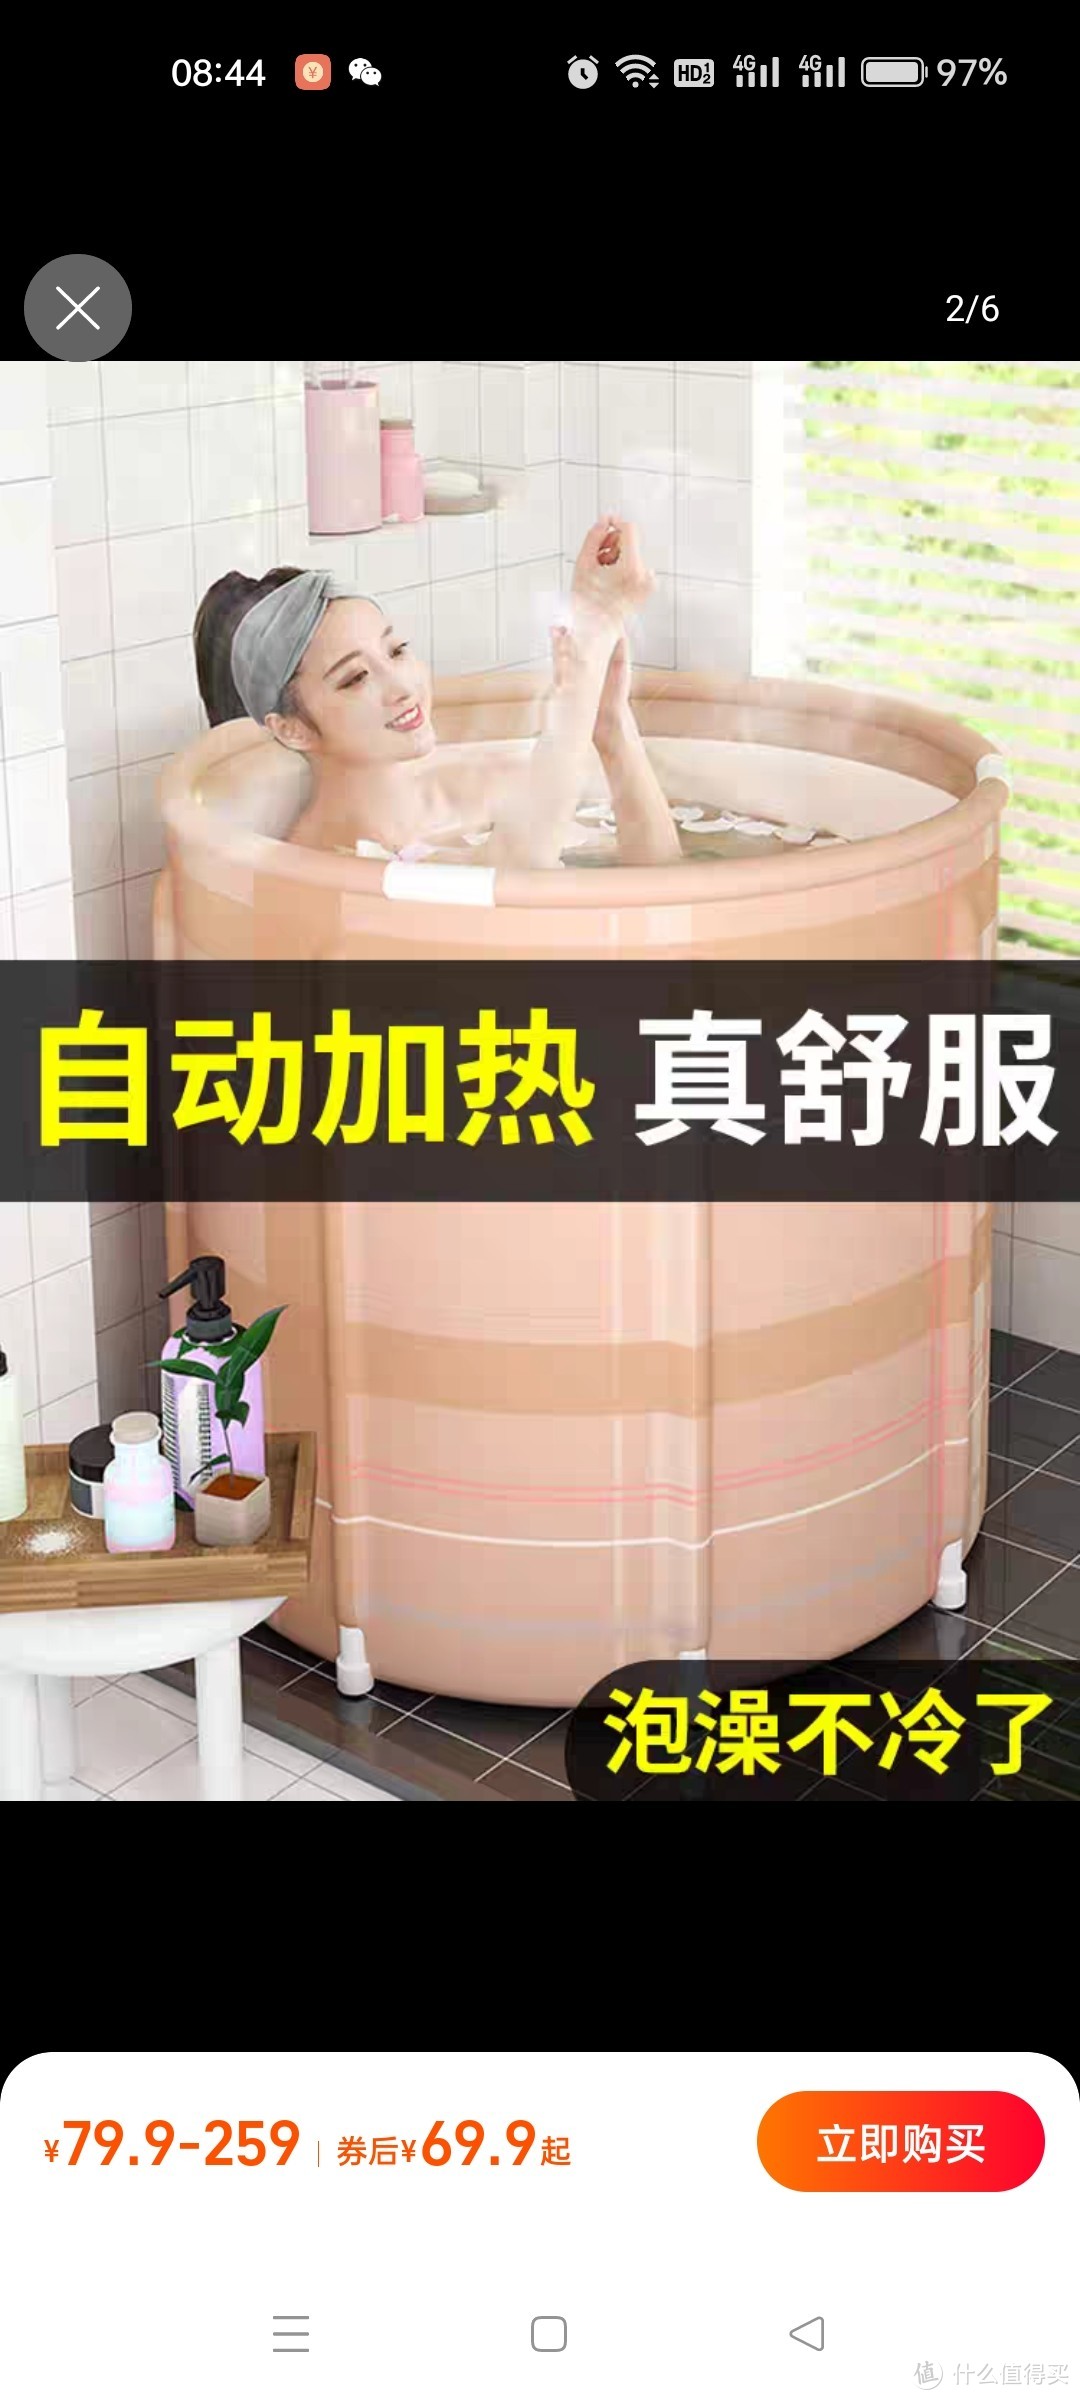 万物皆可测 泡澡桶可折叠自动加热大人儿童洗澡桶家用全身浴缸成人神器沐浴桶